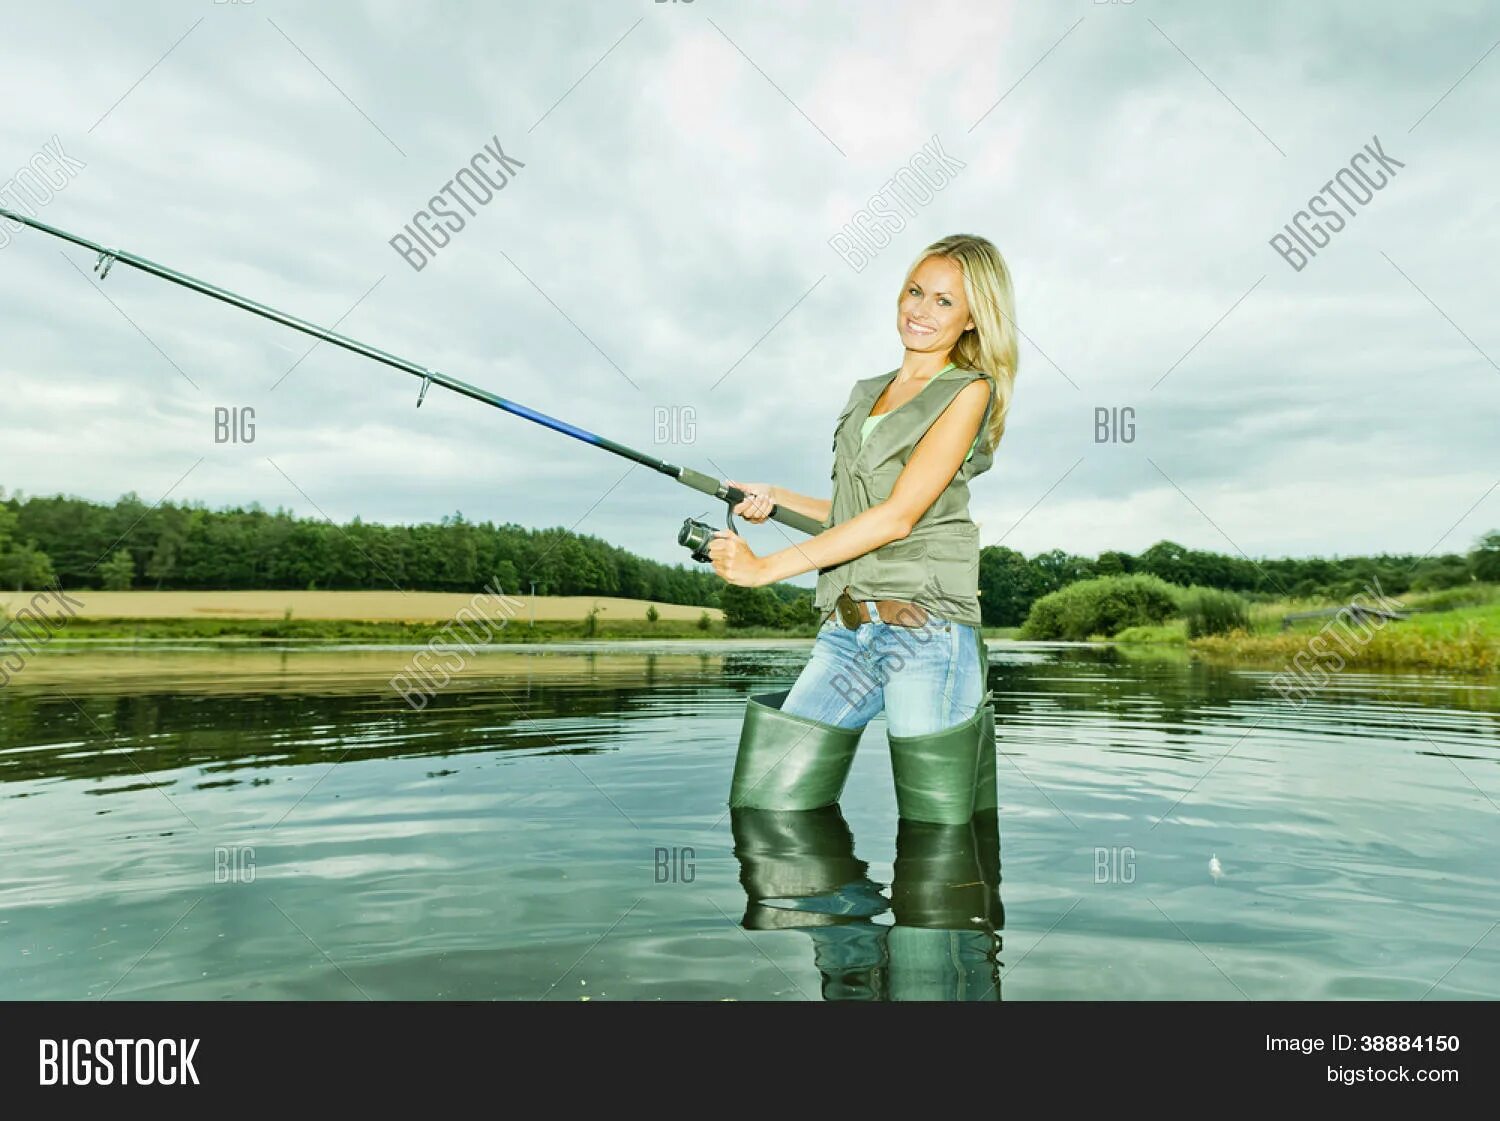 К чему снится рыбалка на удочку. Блондинка с удочкой. Девушка в вейдерсах. Девушка с удочкой в камуфляже. Девушка на рыбалке в сапогах.